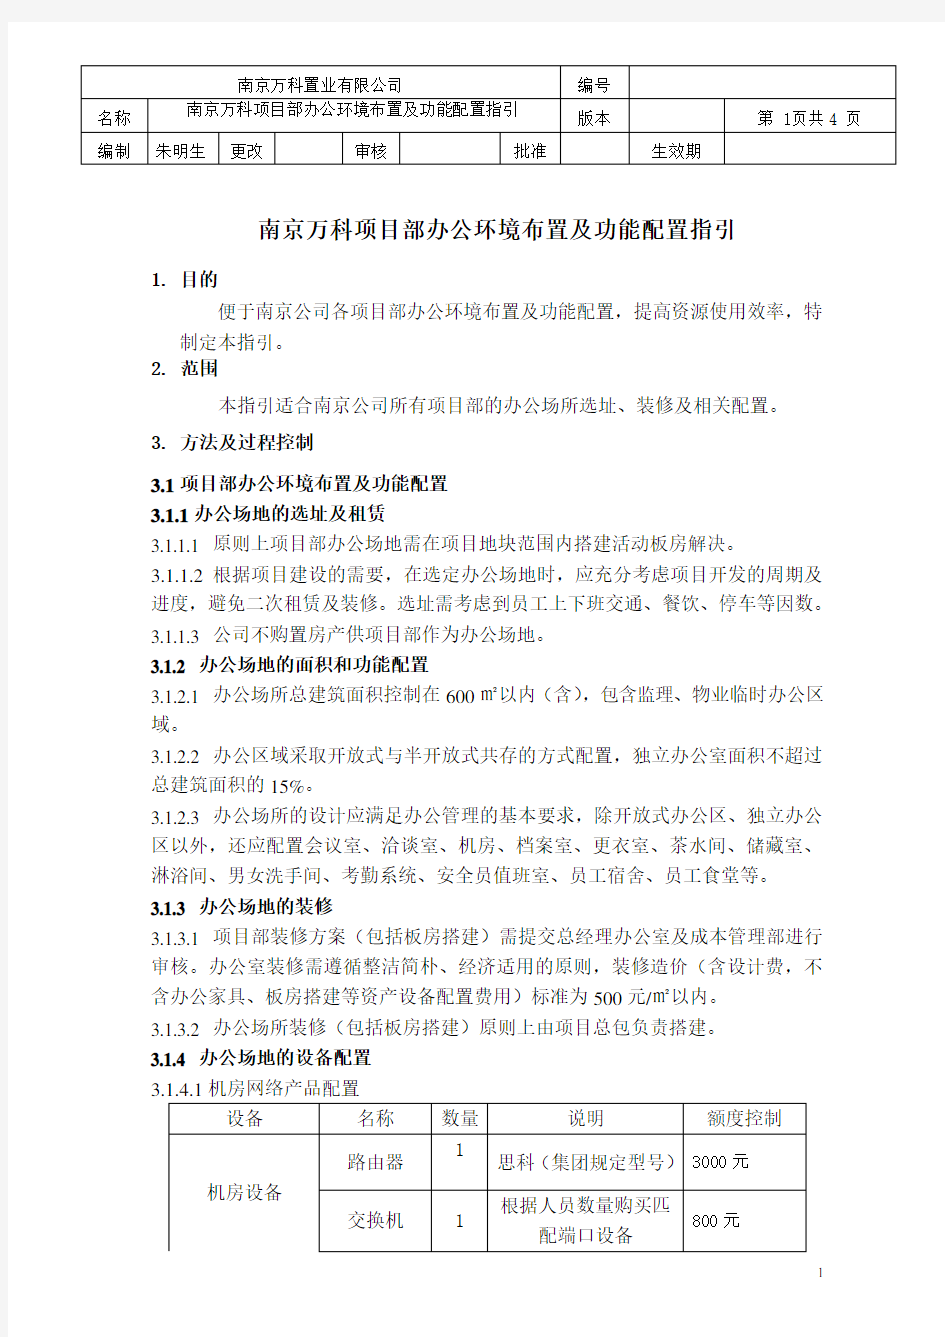 南京万科项目部办公环境布置及功能配置指引